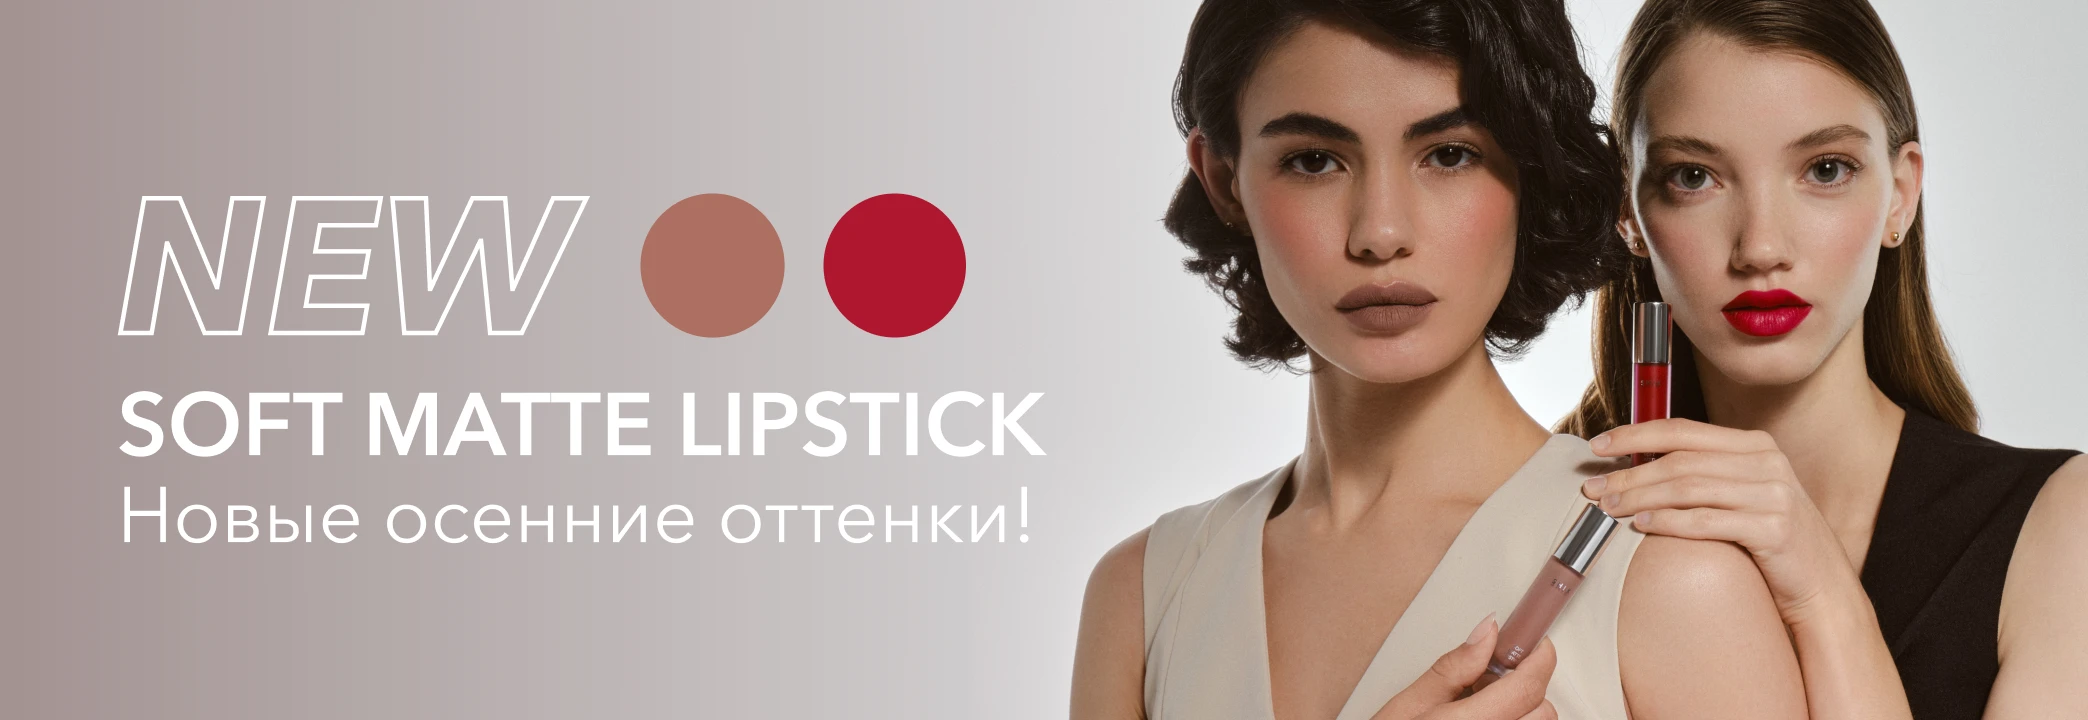 Встречайте новые оттенки Soft Matte Lipstick